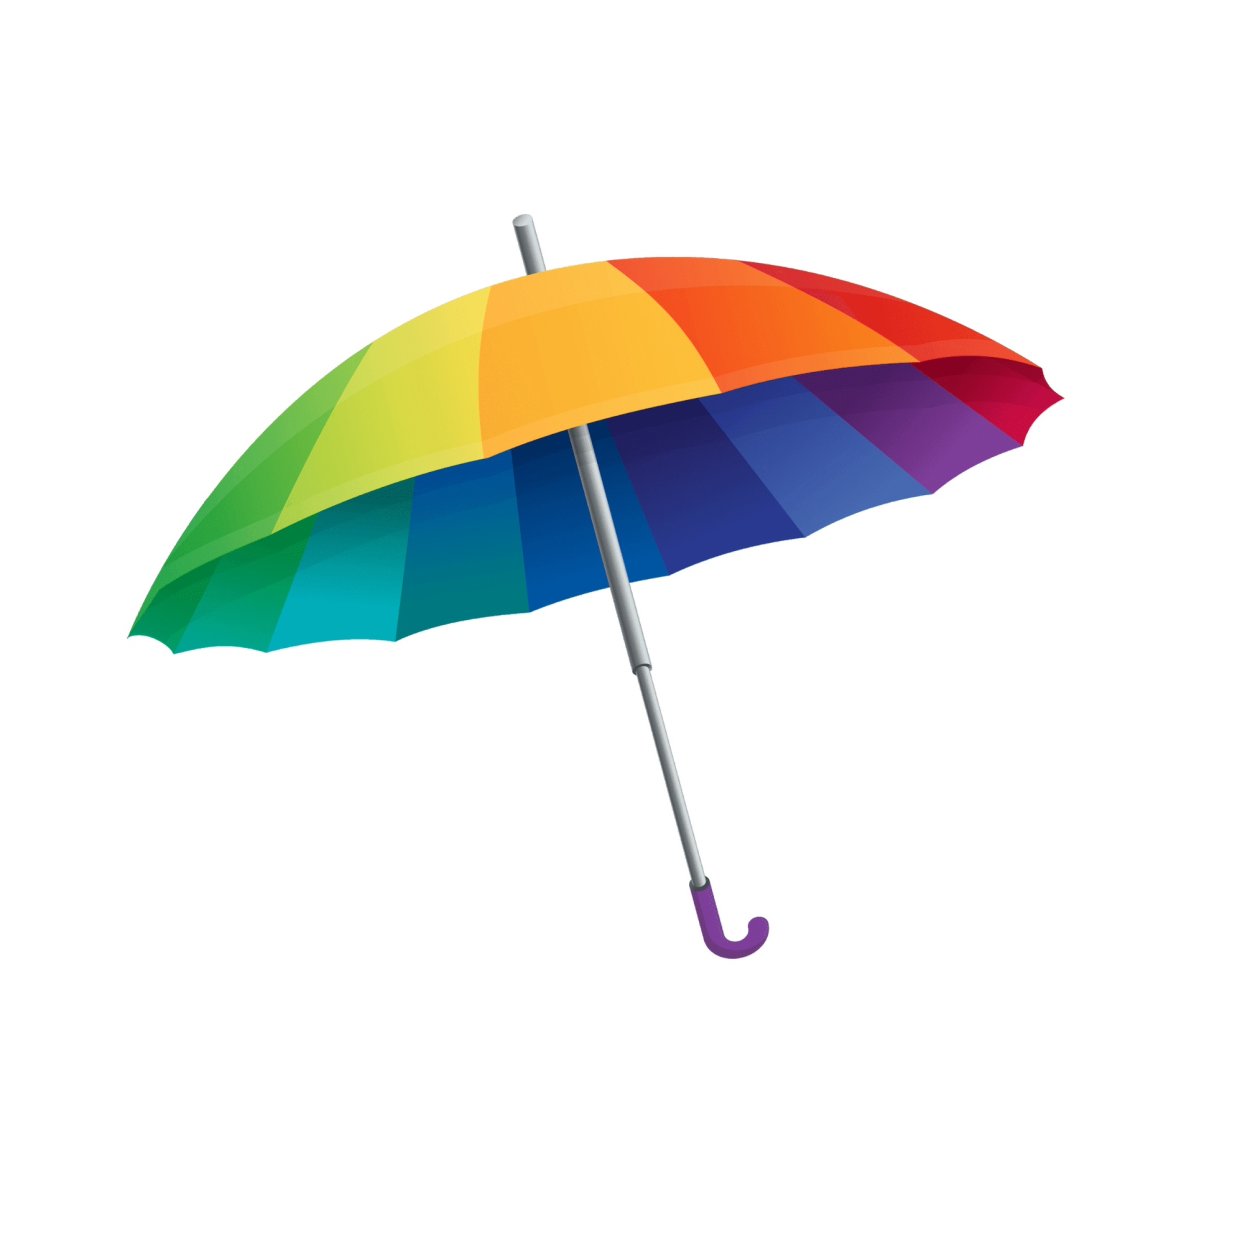 Цветные зонтики. Разноцветный зонт. Зонтики яркие. Зонт на белом фоне. Зонтик читать